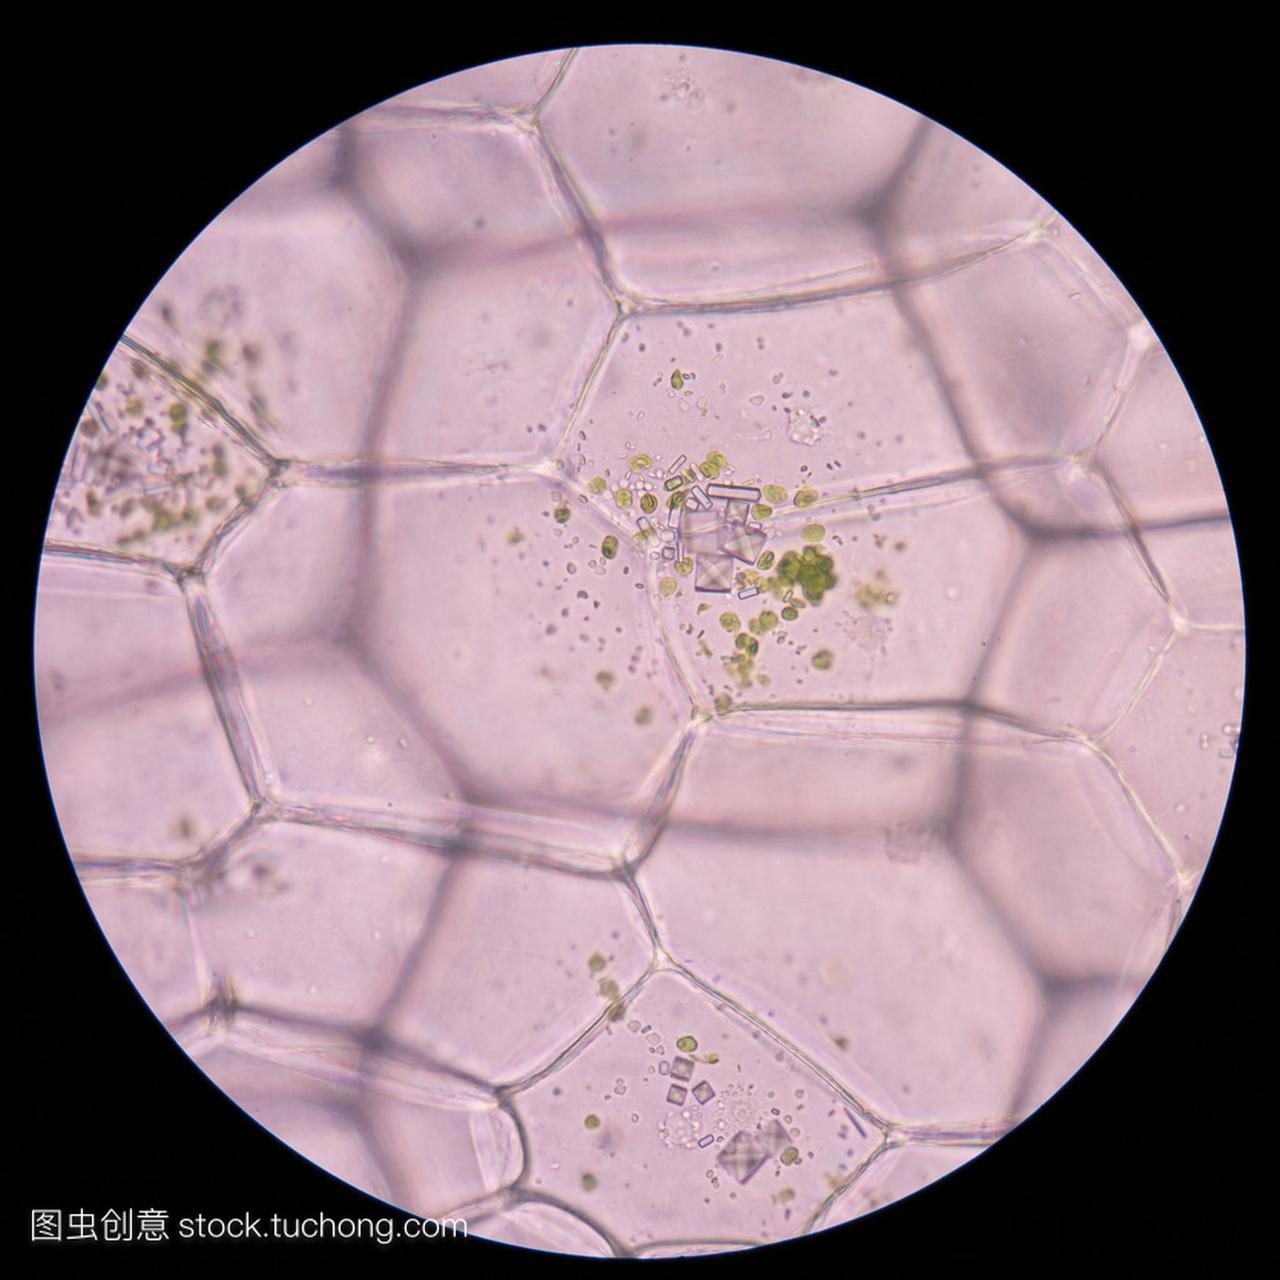 牡蛎植物细胞。显微镜下观察植物细胞